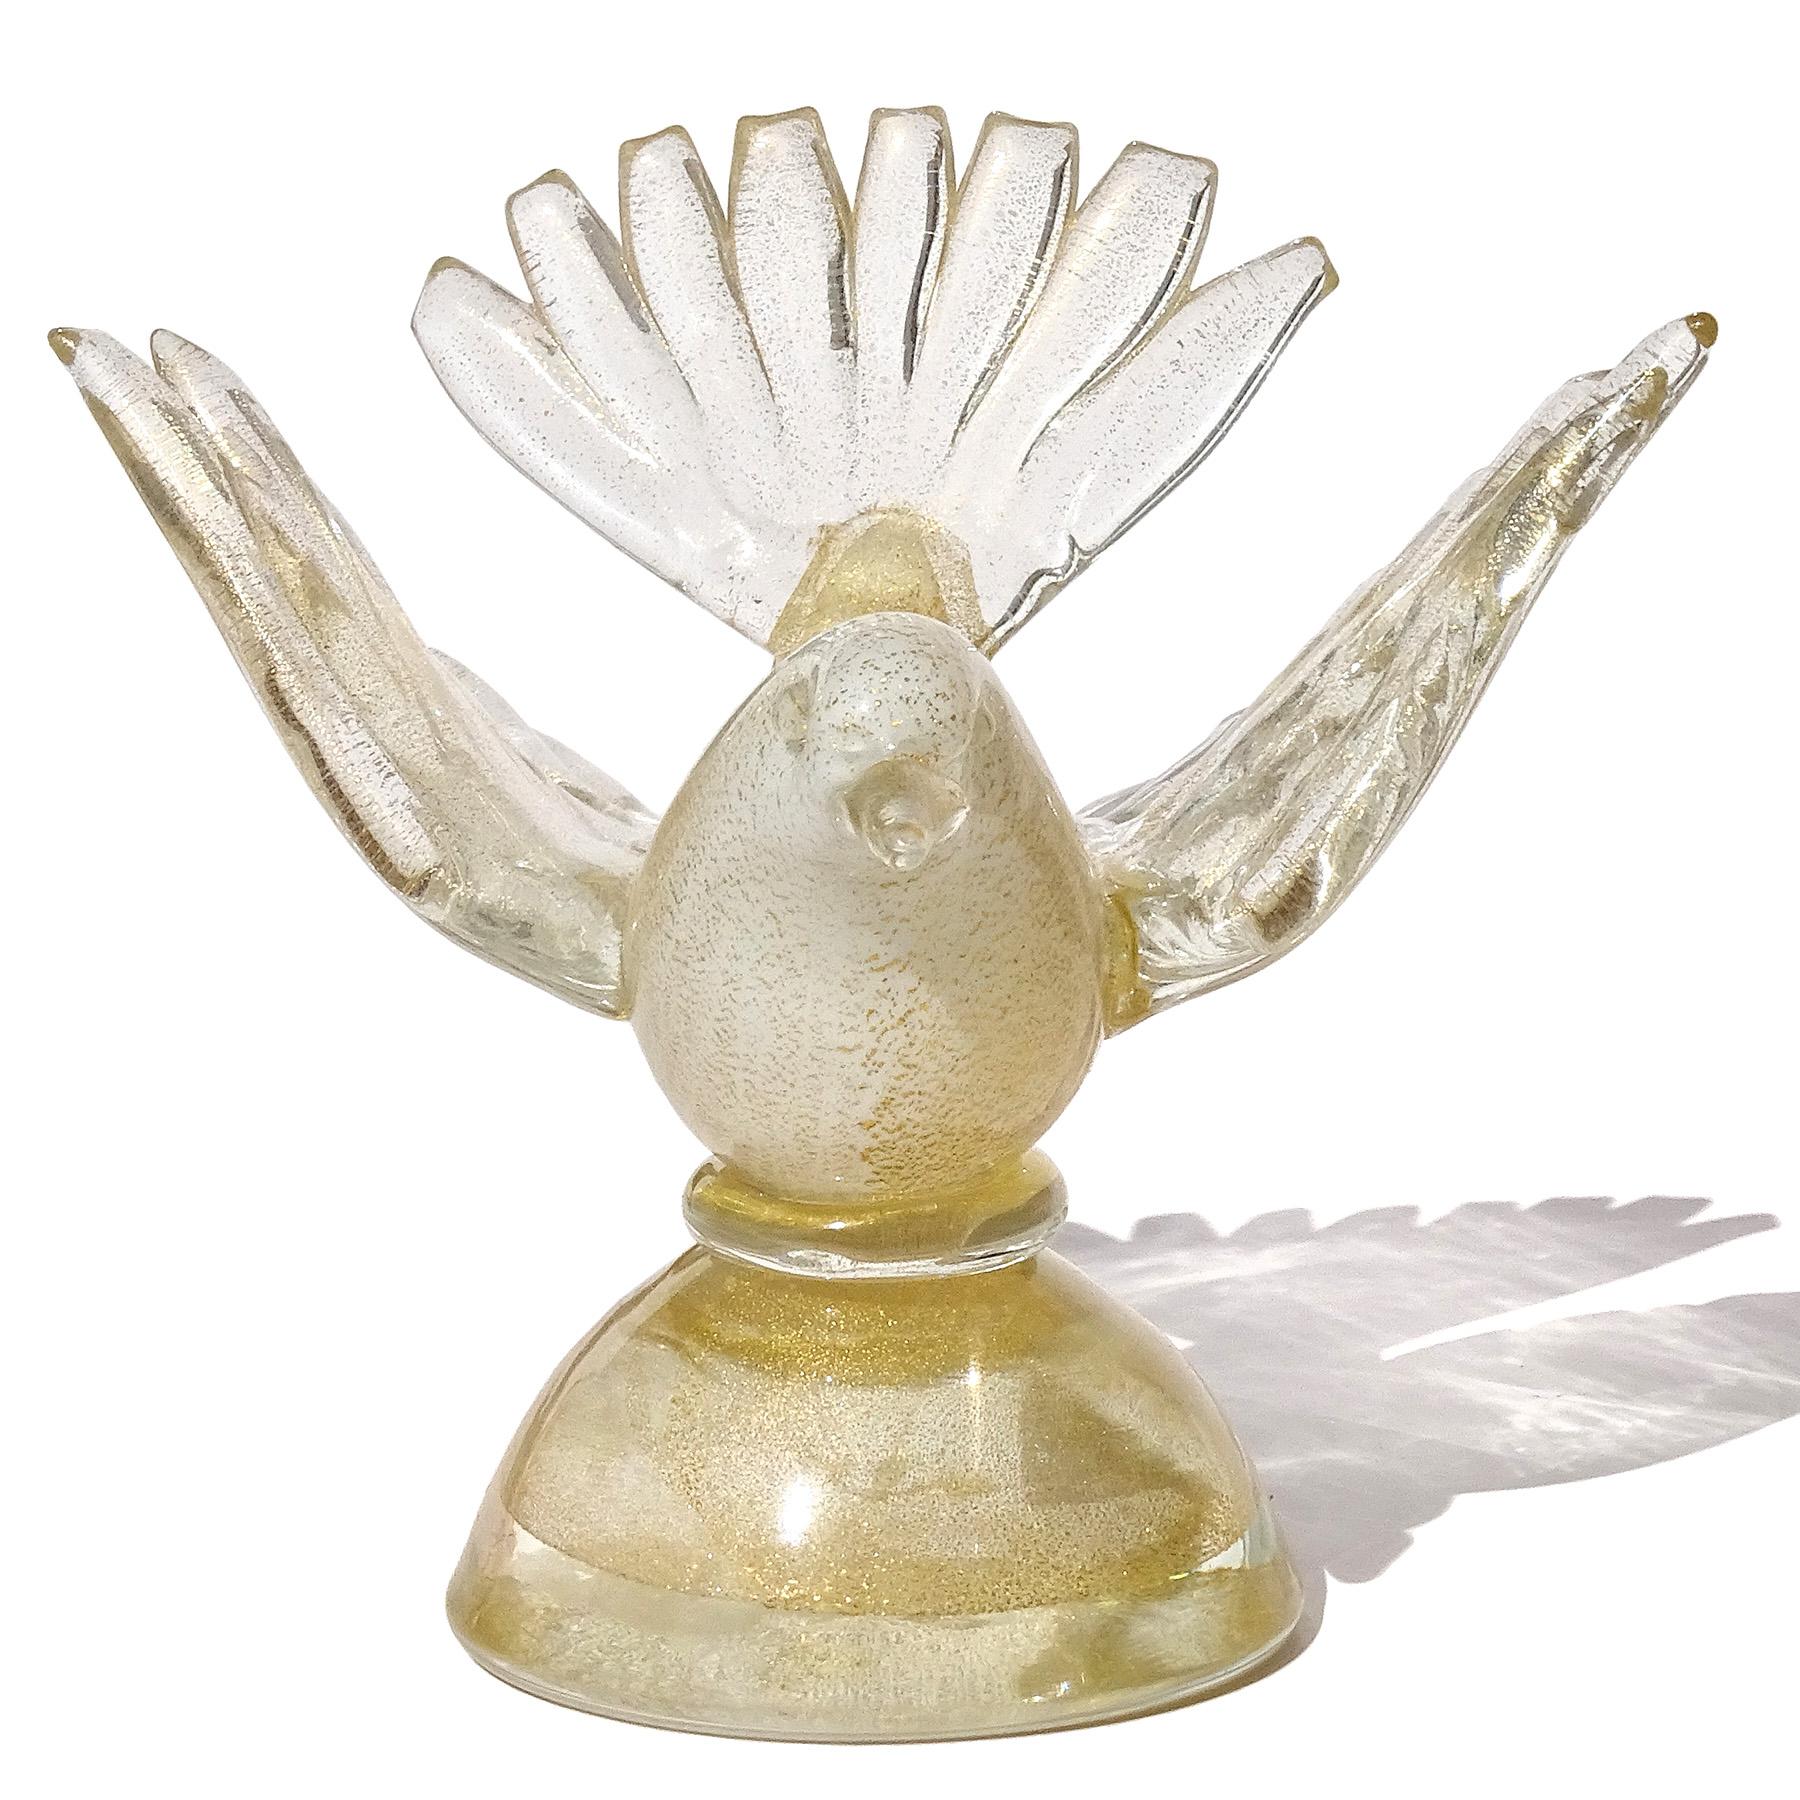 Schöne Vintage Murano mundgeblasen weiß und Goldflecken italienische Kunst Glas Vogel auf Basis Figur, Briefbeschwerer. Dokumentiert für den Designer Alfredo Barbini, ca. 1950-60er Jahre. Ich habe noch weitere Exemplare mit den Etiketten von Barbini